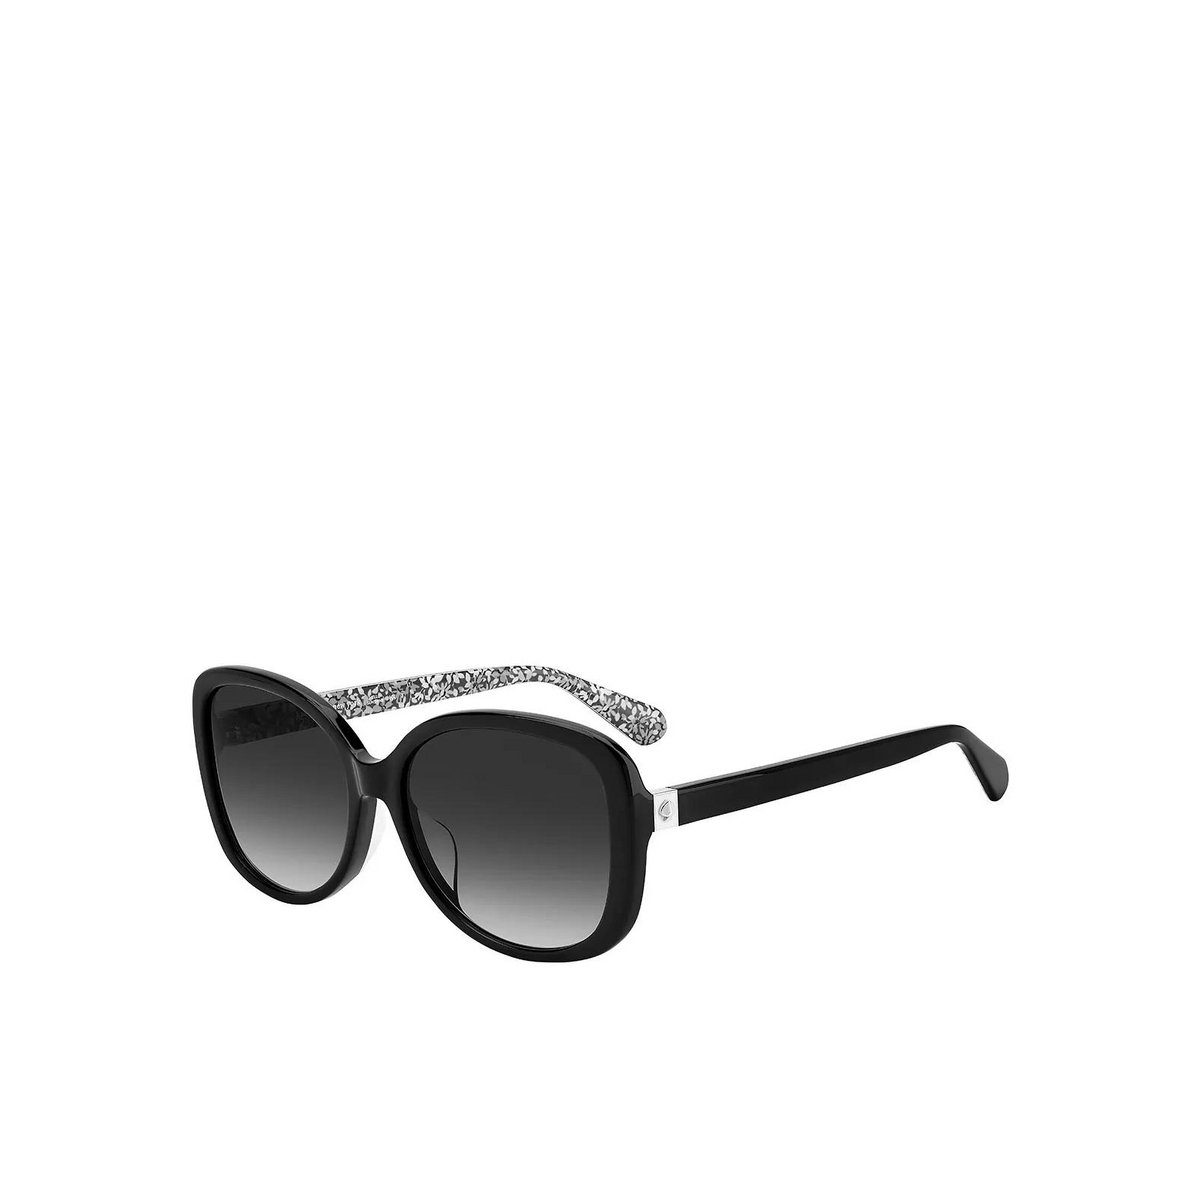 (1-St) YORK KATE NEW SPADE schwarz Sonnenbrille